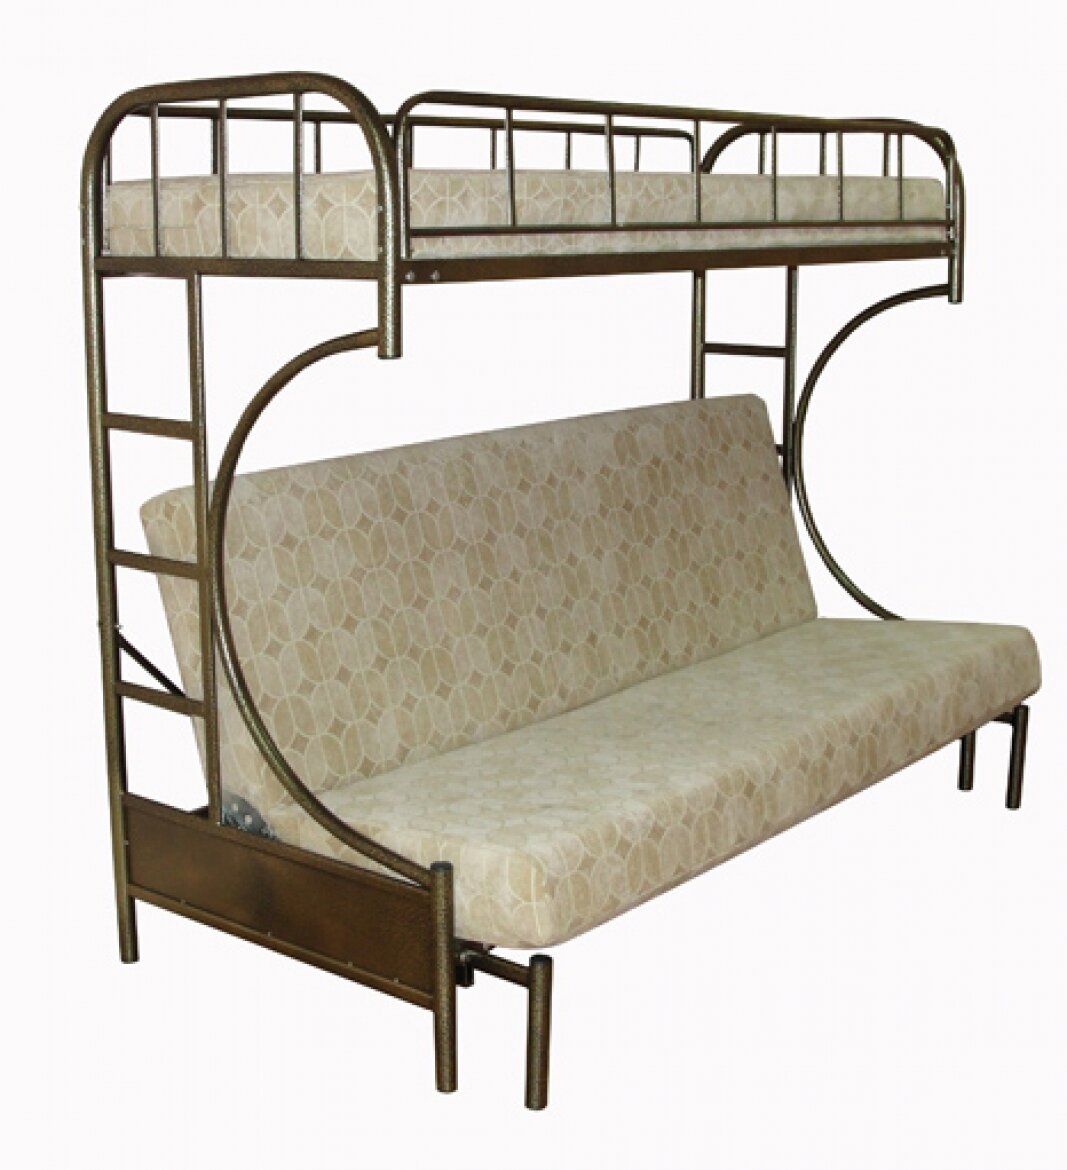 кровать двухъярусная с диваном малайзия